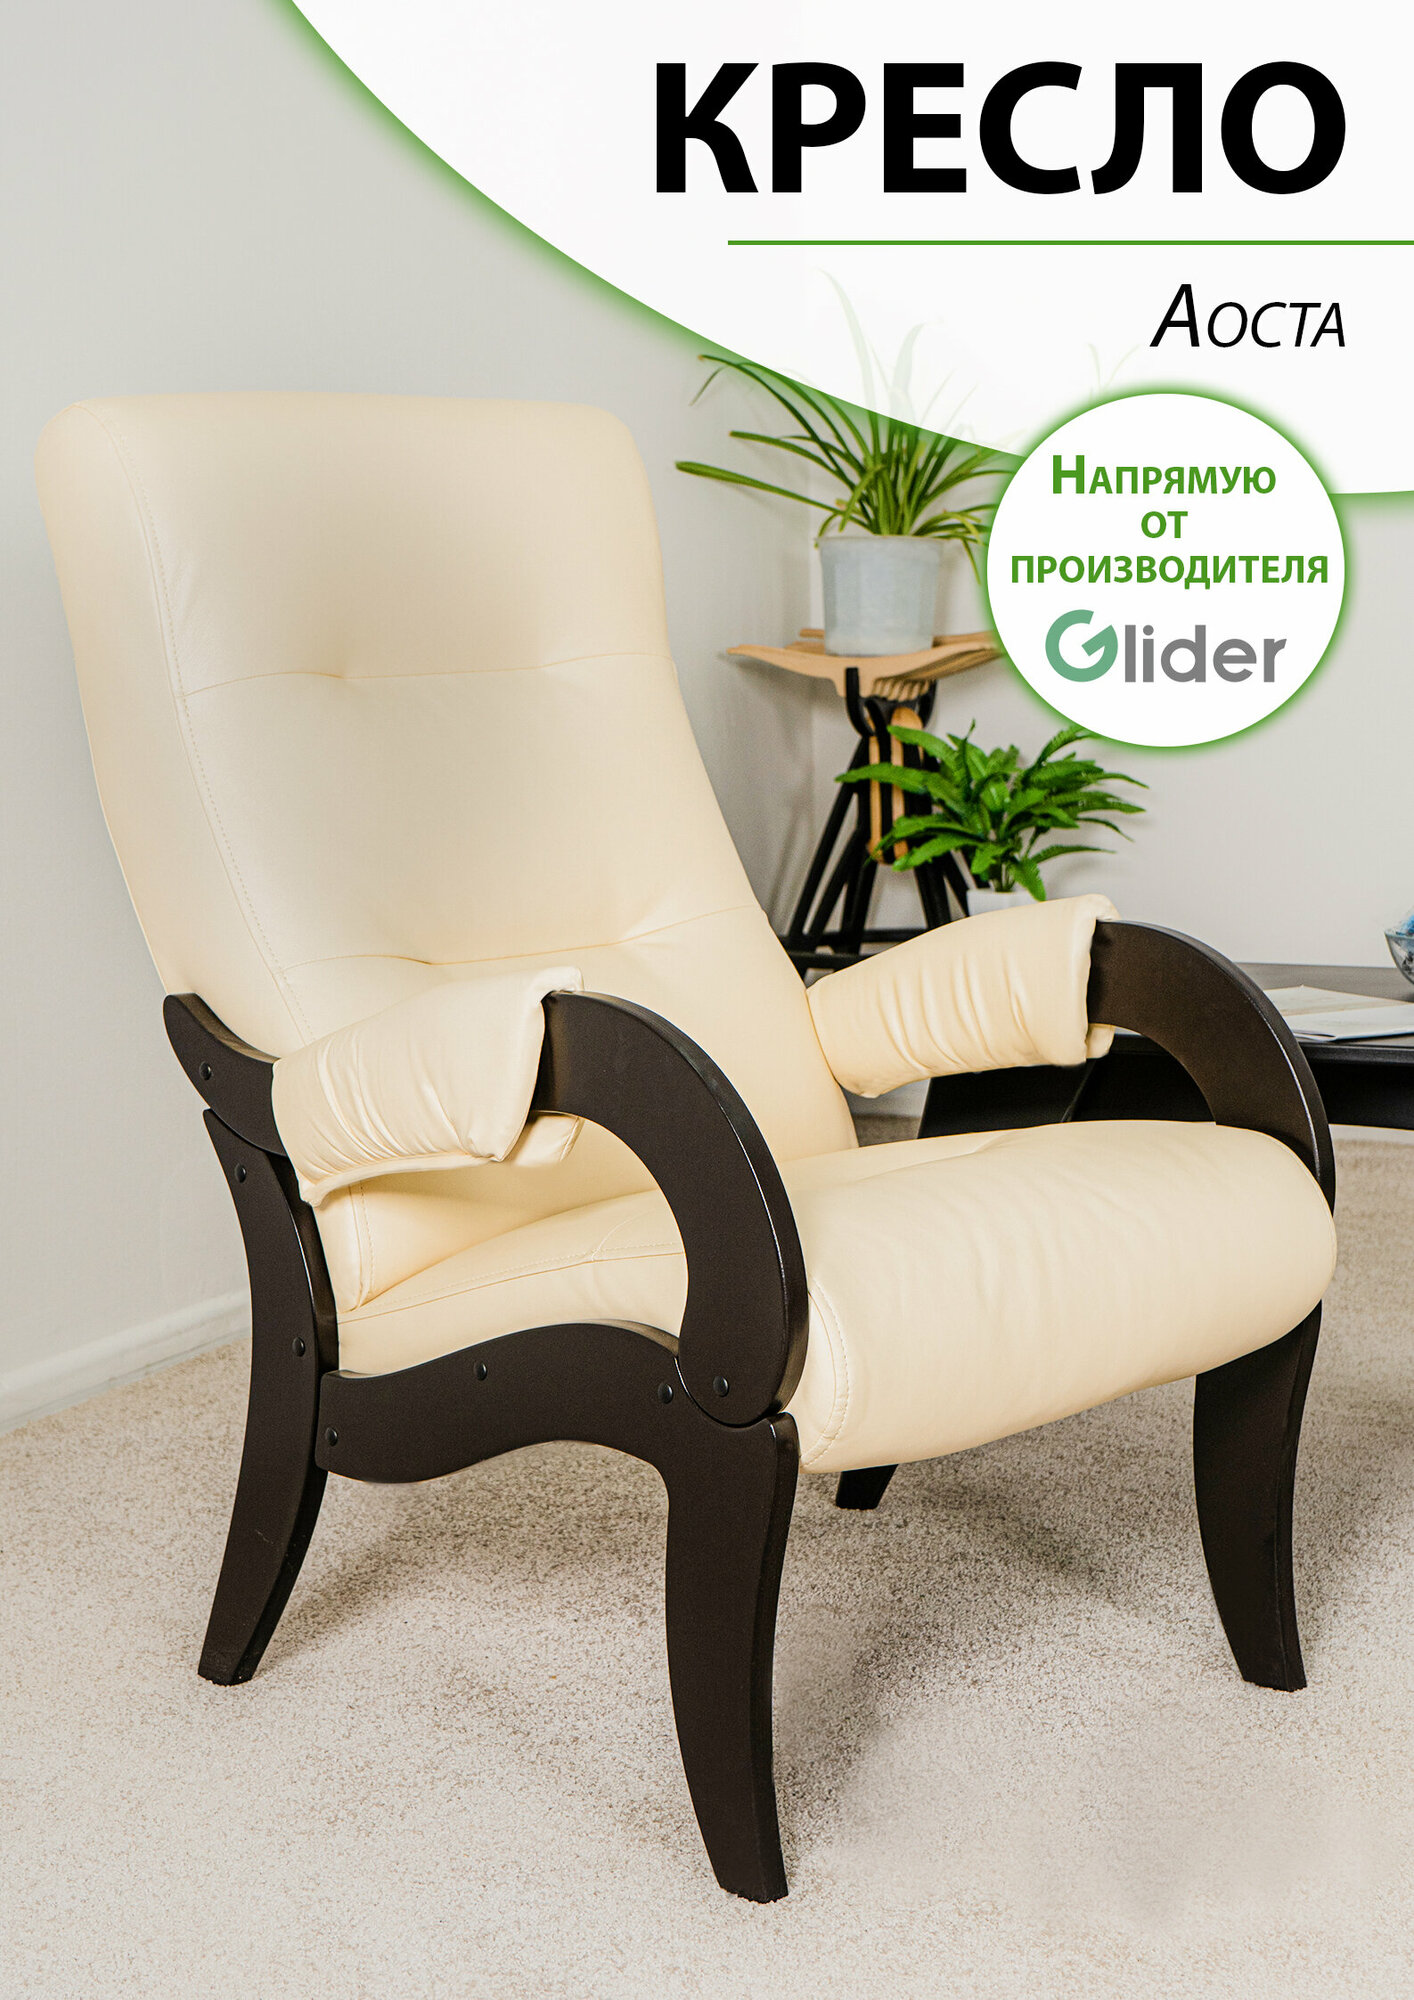 Кресло мягкое для дома и дачи Glider Аоста из искусственной кожи, цвет бежевый, со спинкой для взрослых мягкое мебель для гостиной кухни прихожей дачи, в подарок